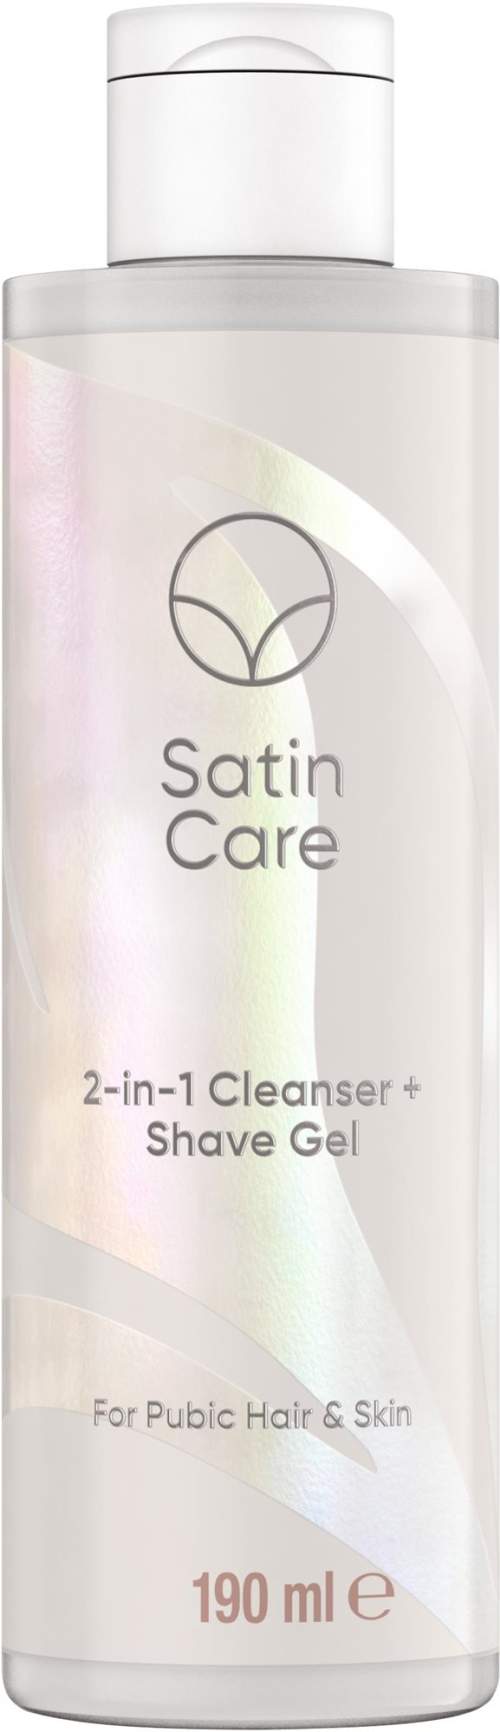 Gillette Venus Satin Care 2-in-1 Cleanser & Shave Gel gel na holení a mytí intimních míst 190 ml pro ženy